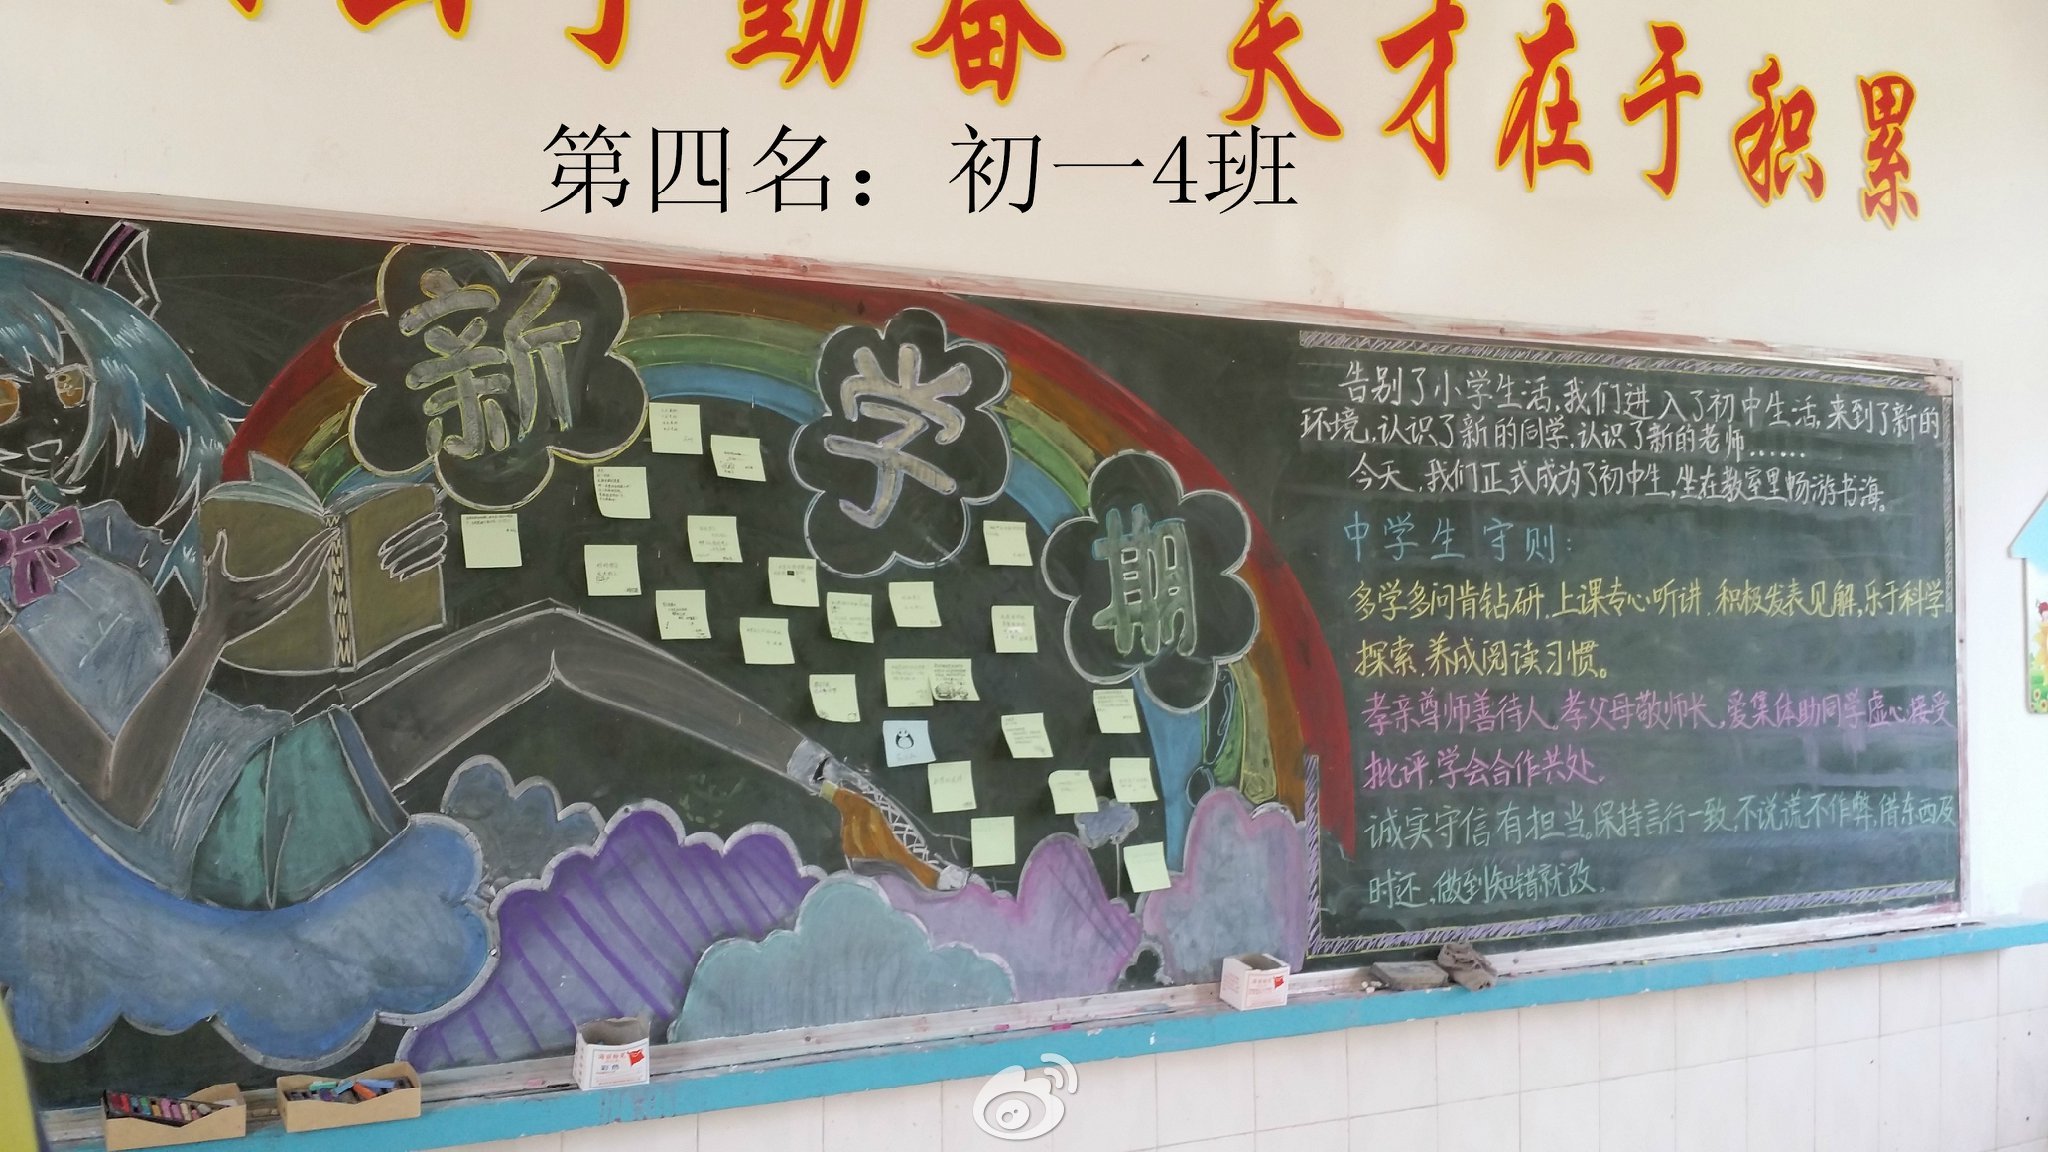 郑州24中举办“健康生活”主题黑板报评比活动-郑州市第二十四中学